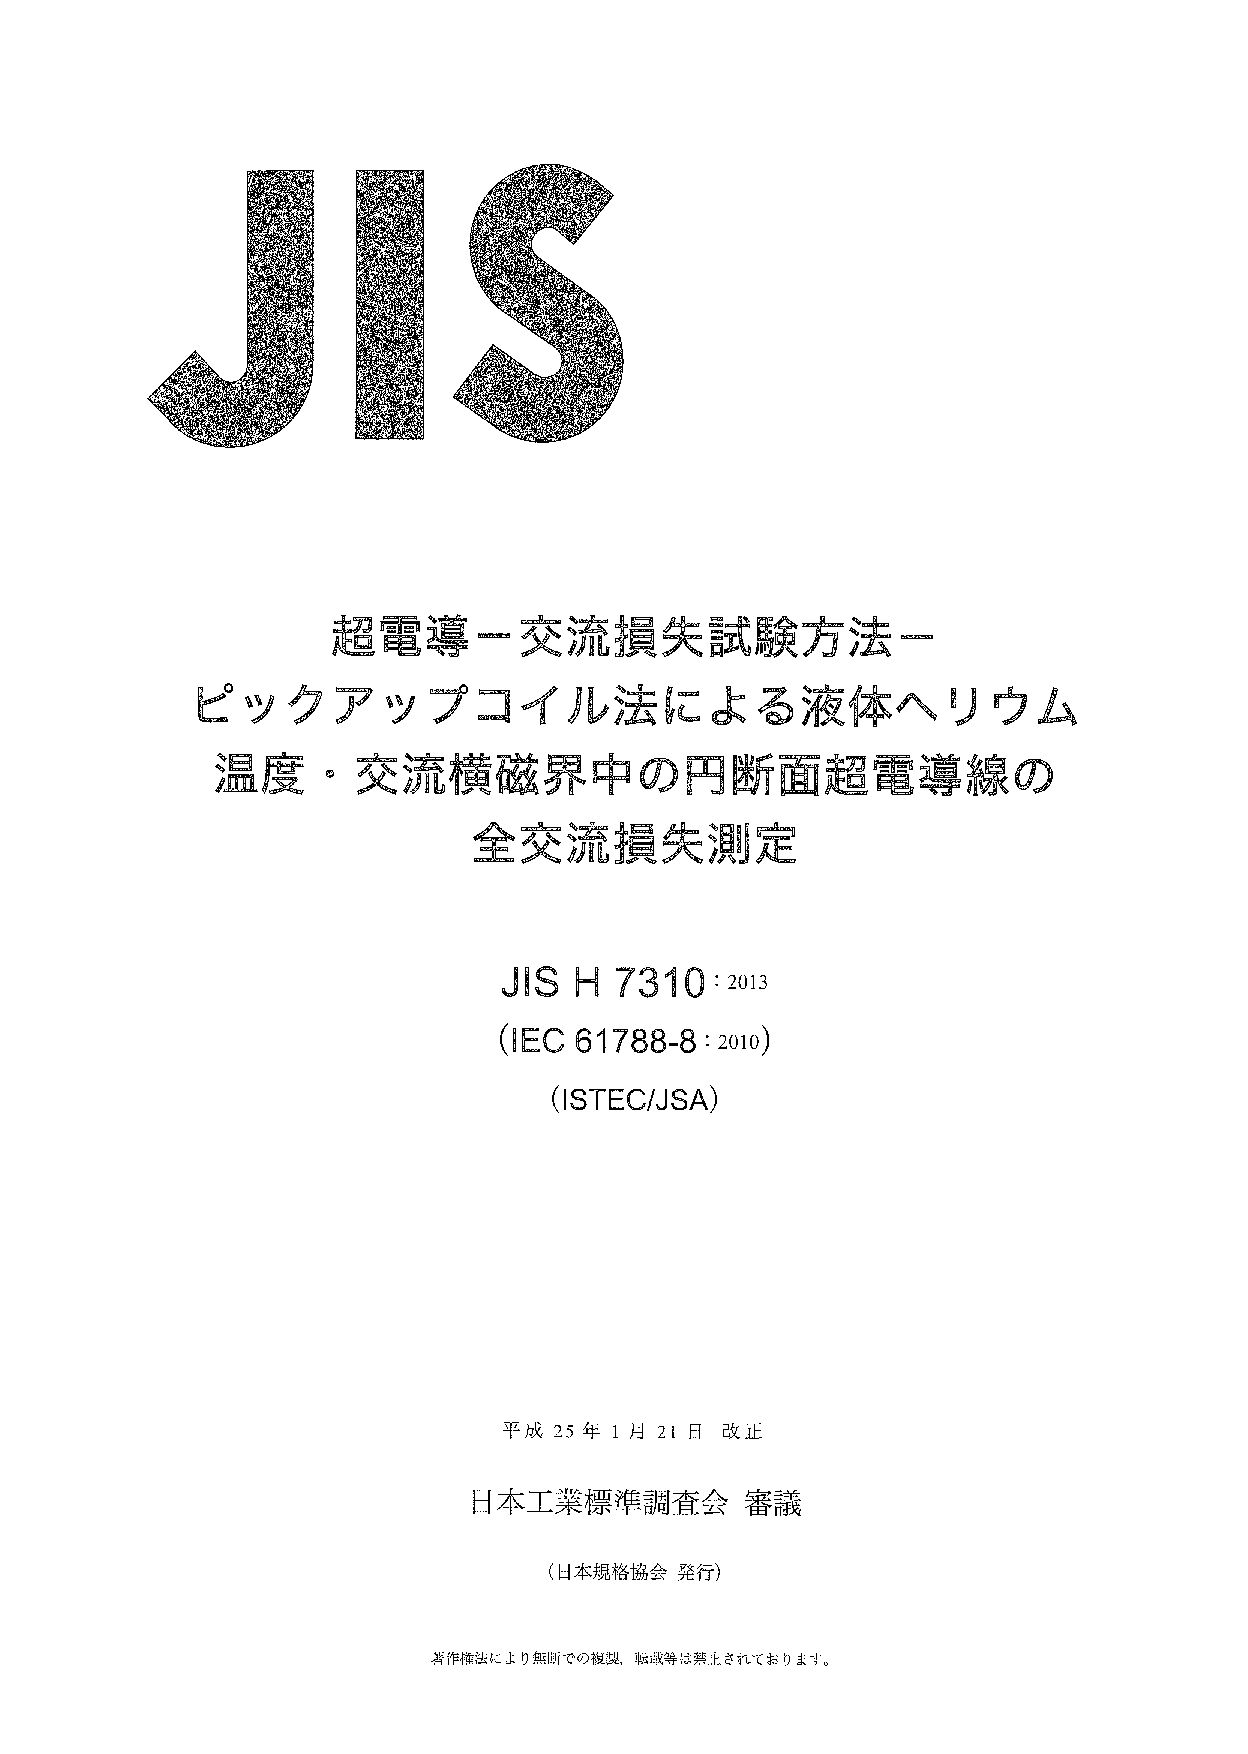 JIS H 7310:2013封面图